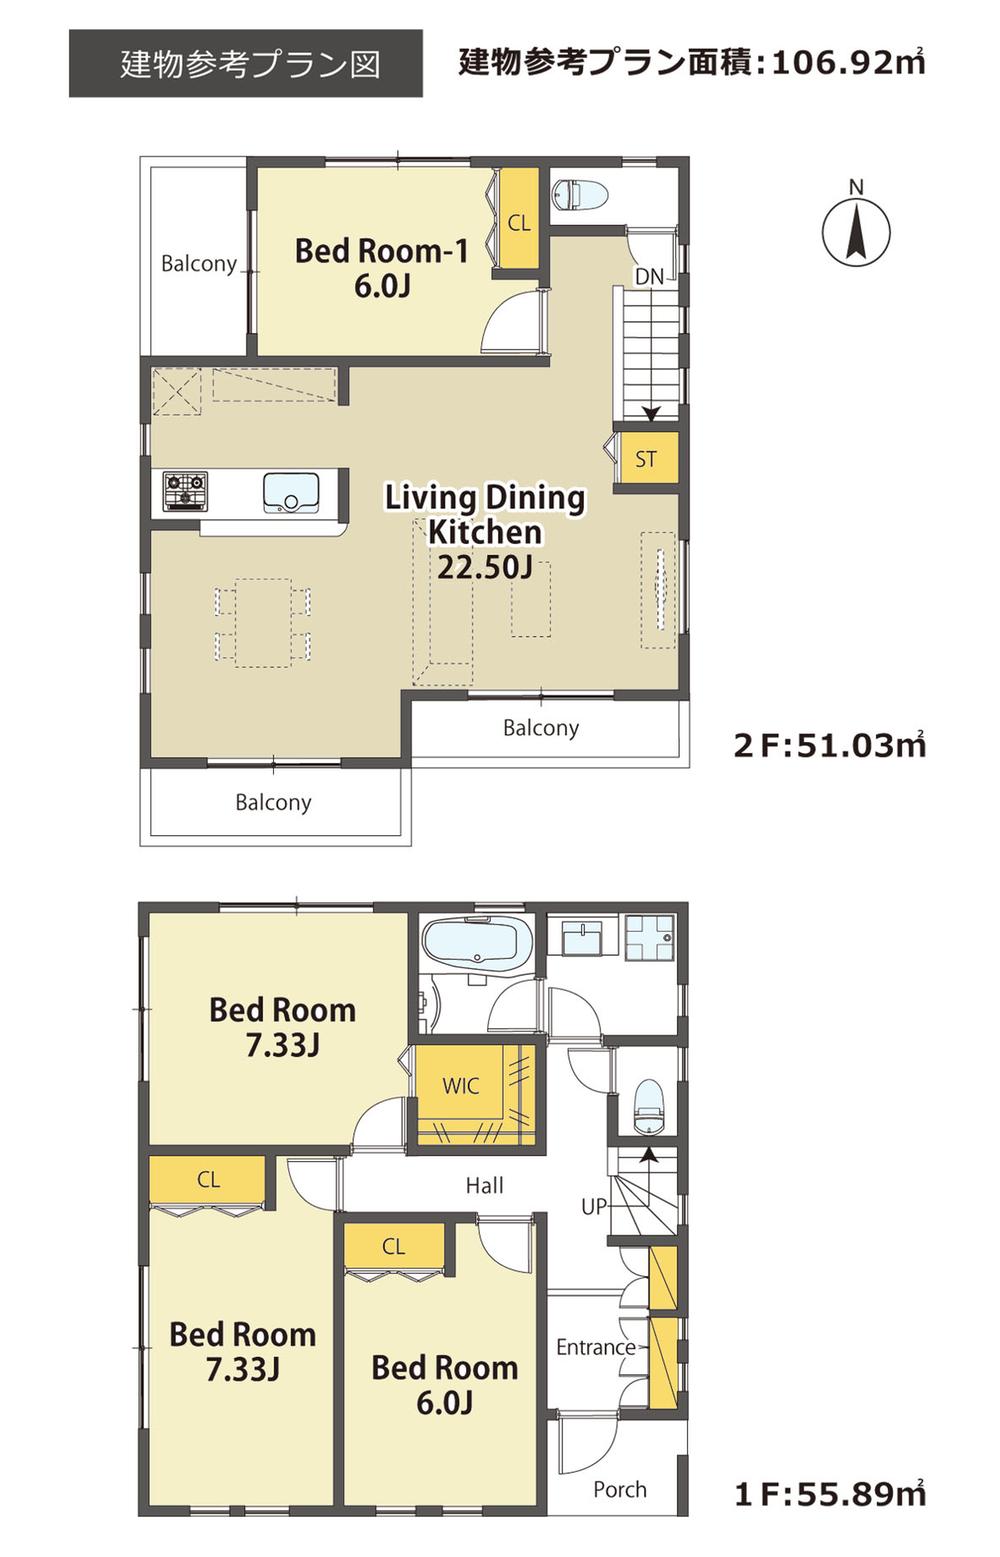 Building plan example (floor plan). Building plan example Building area 106.92 sq m